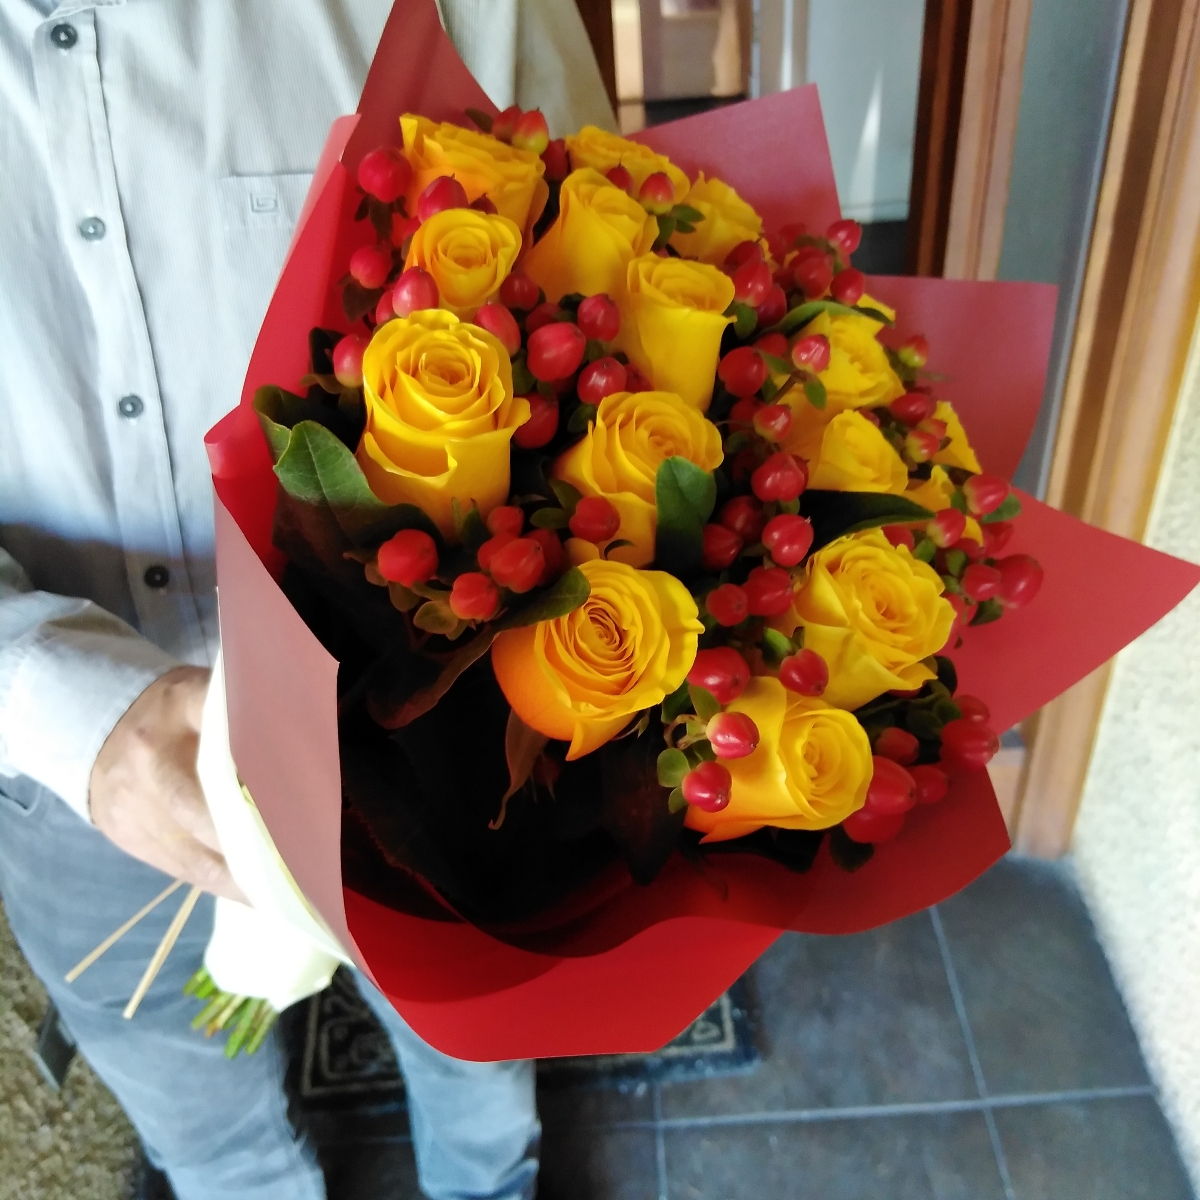 Ramo de rosas - Ramo circular con 18 rosas amarillas e hypericum rojo - Pedido 244164